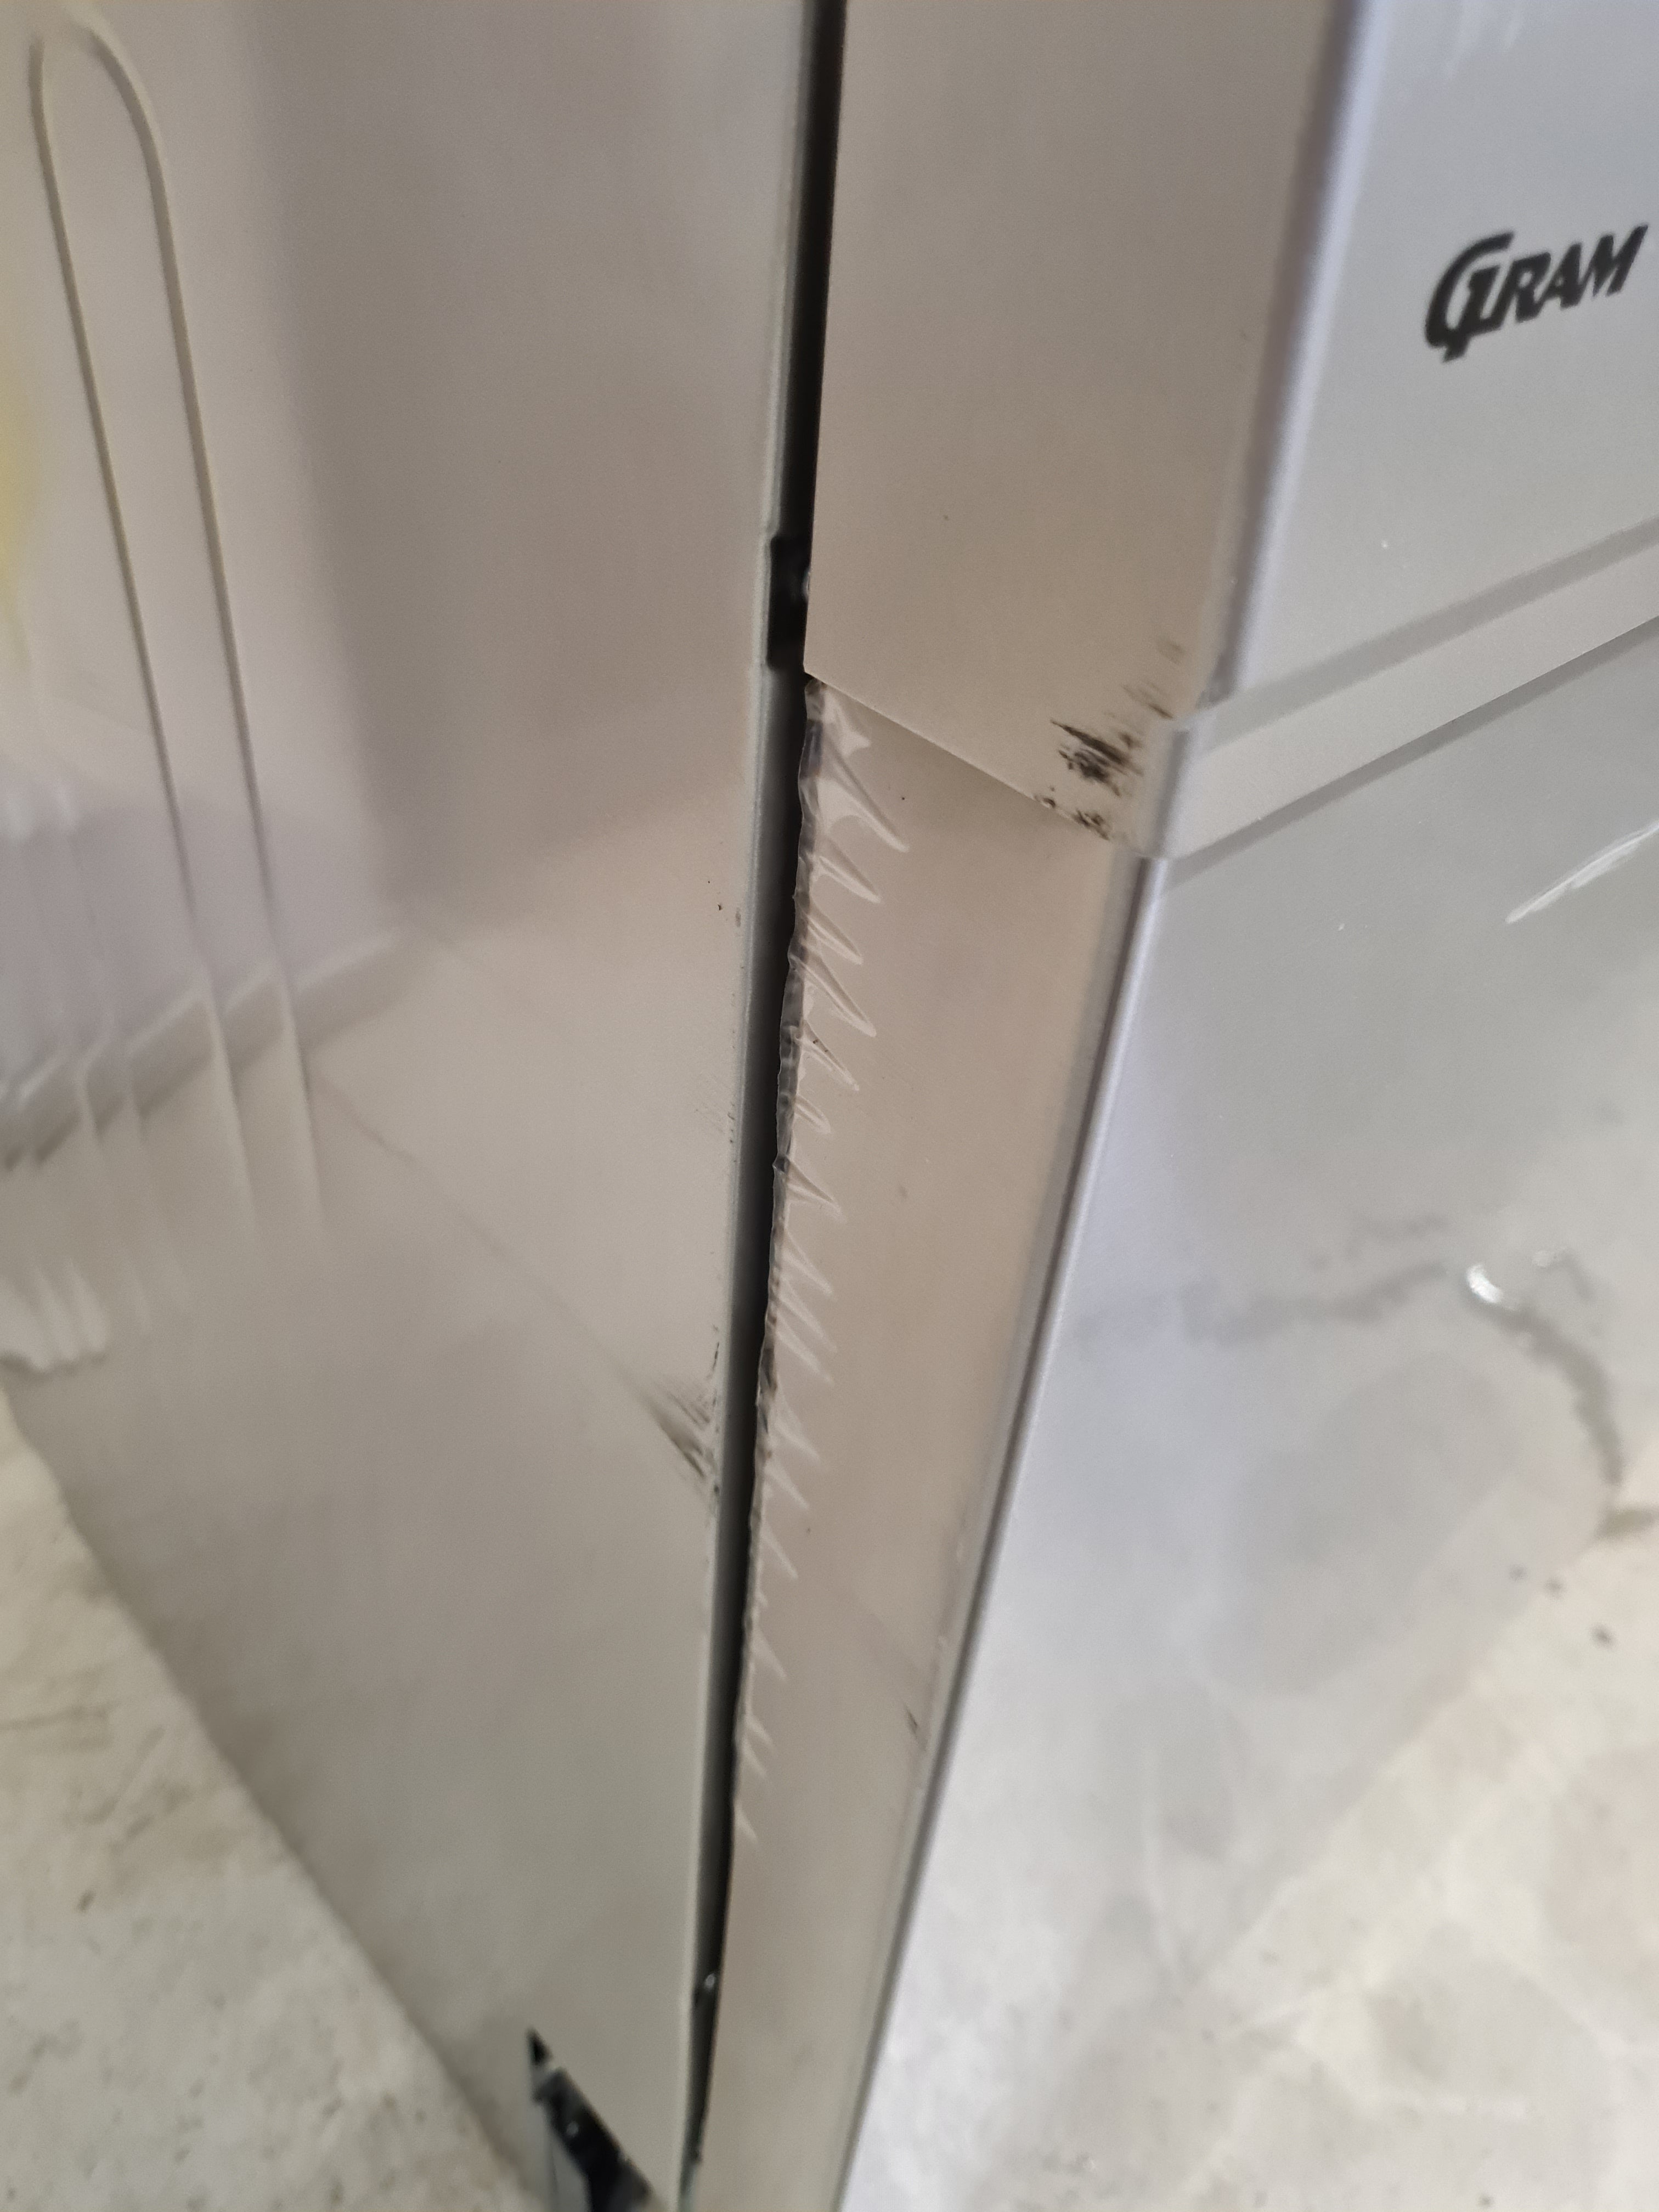 Gram oppvaskmaskin OM 6100-90 TX Rustfritt stål